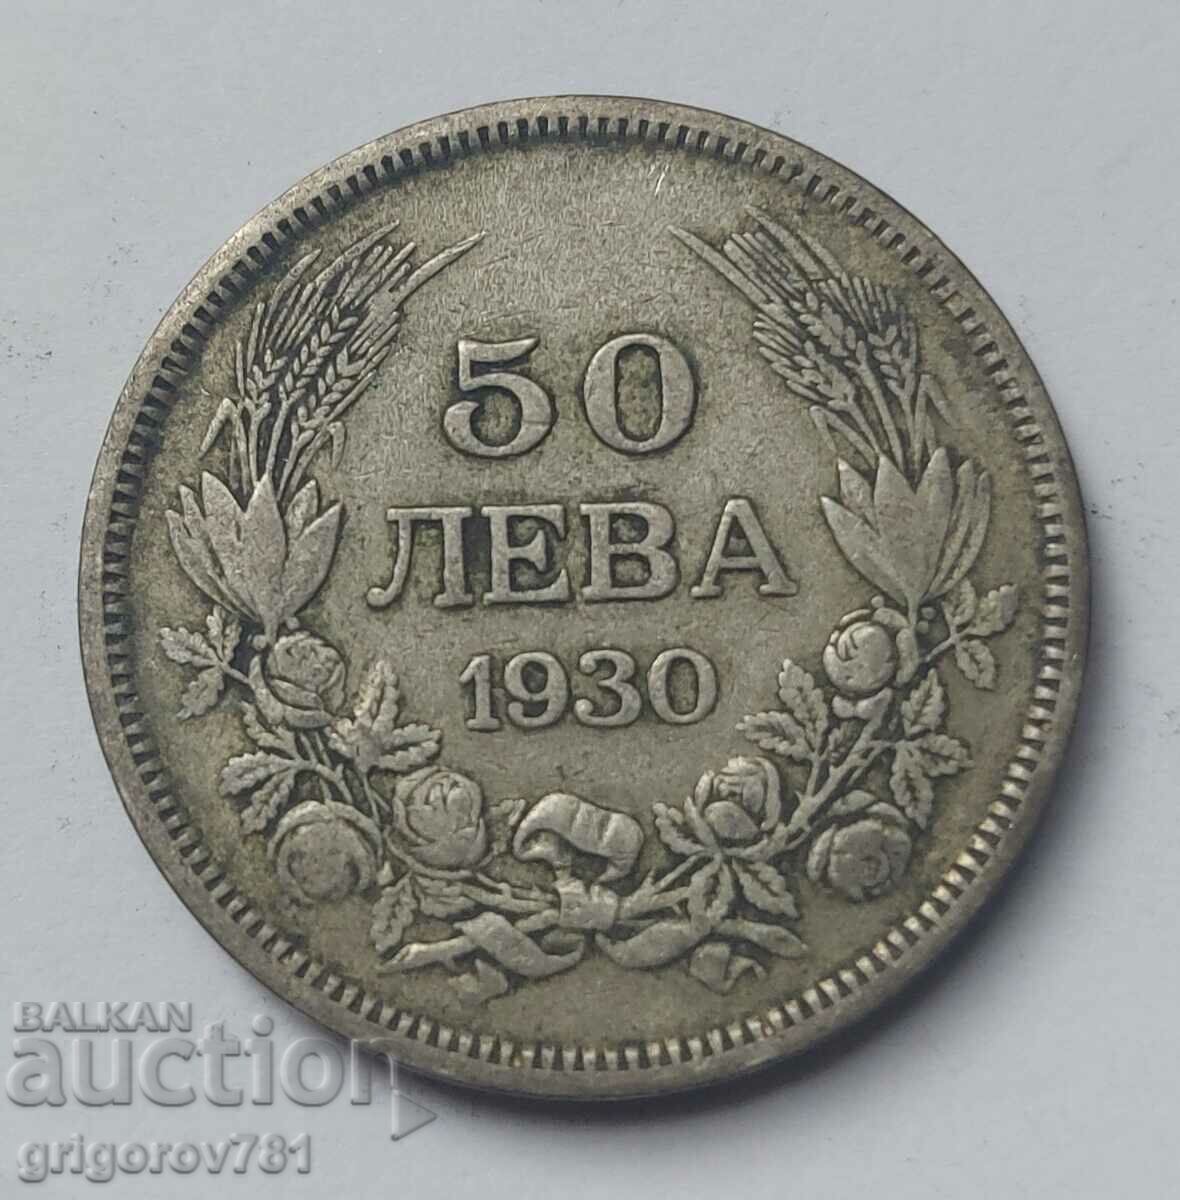 Ασήμι 50 λέβα Βουλγαρία 1930 - ασημένιο νόμισμα #41